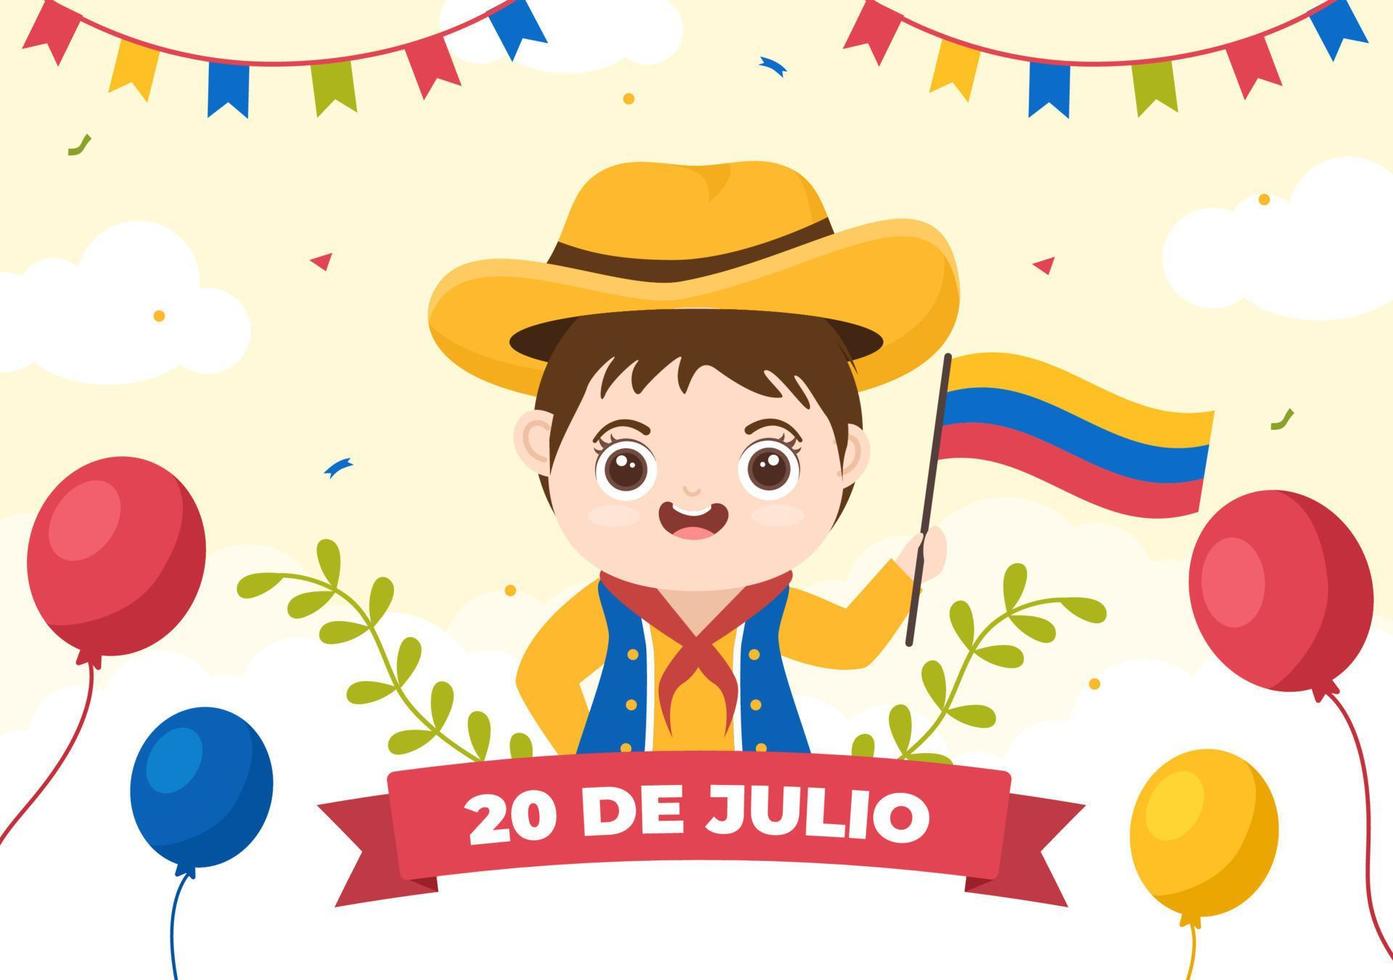 20 de julio independencia de colombia karikaturillustration mit flaggen, luftballons und niedlichen kinderpersonencharakteren für plakatdesign vektor